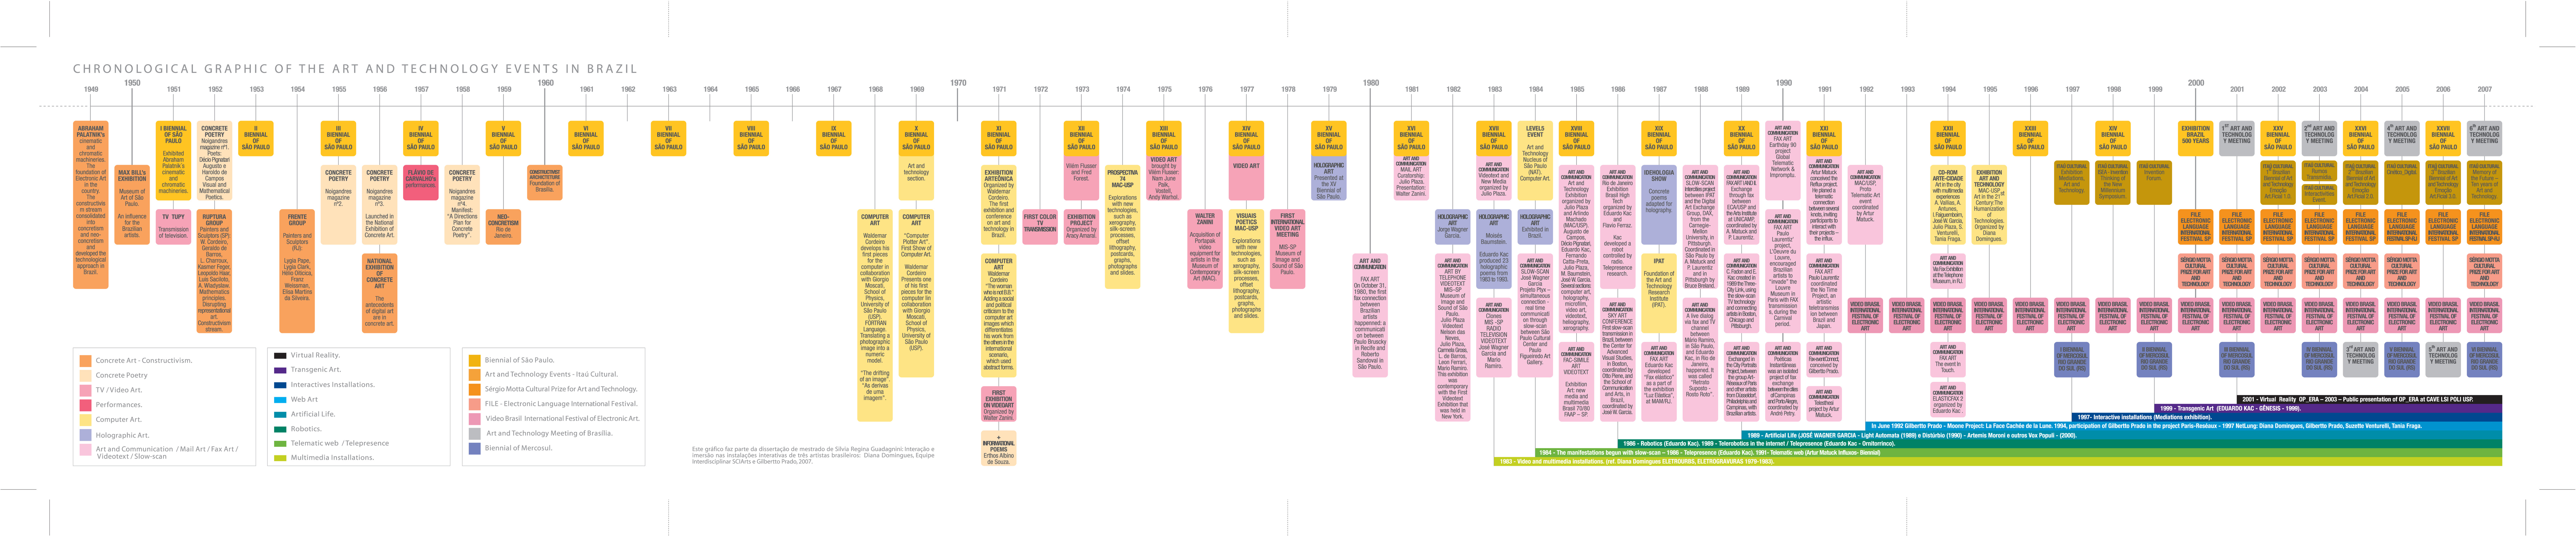 timeline de eventos em arte e tecnologia até o ano 2007 quando o artigo foi escrito